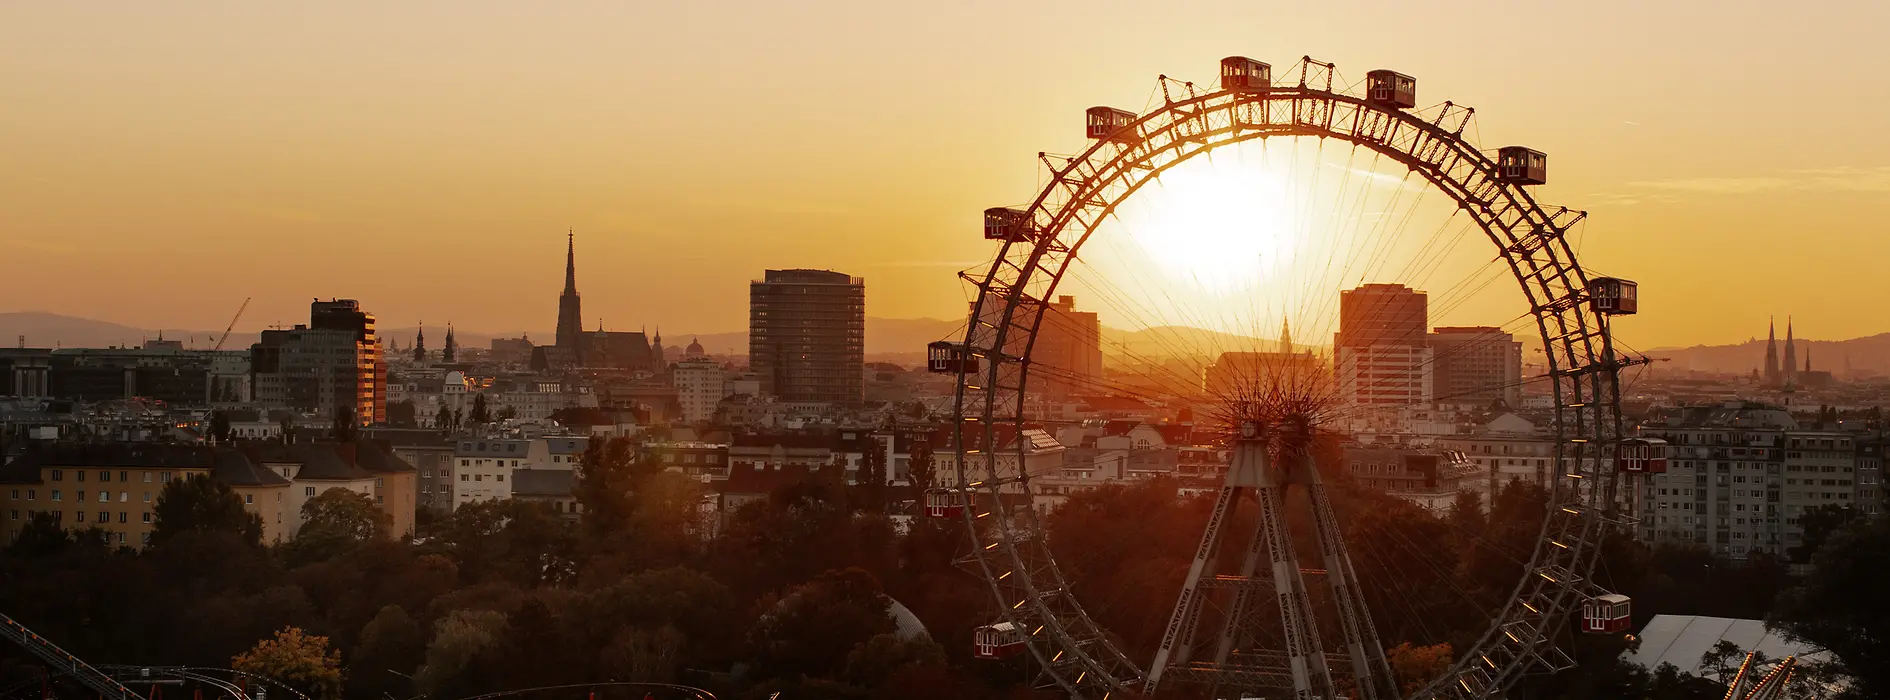 Ferris wheel in the Vienna Prater, Vienna skyline at sunset in the background